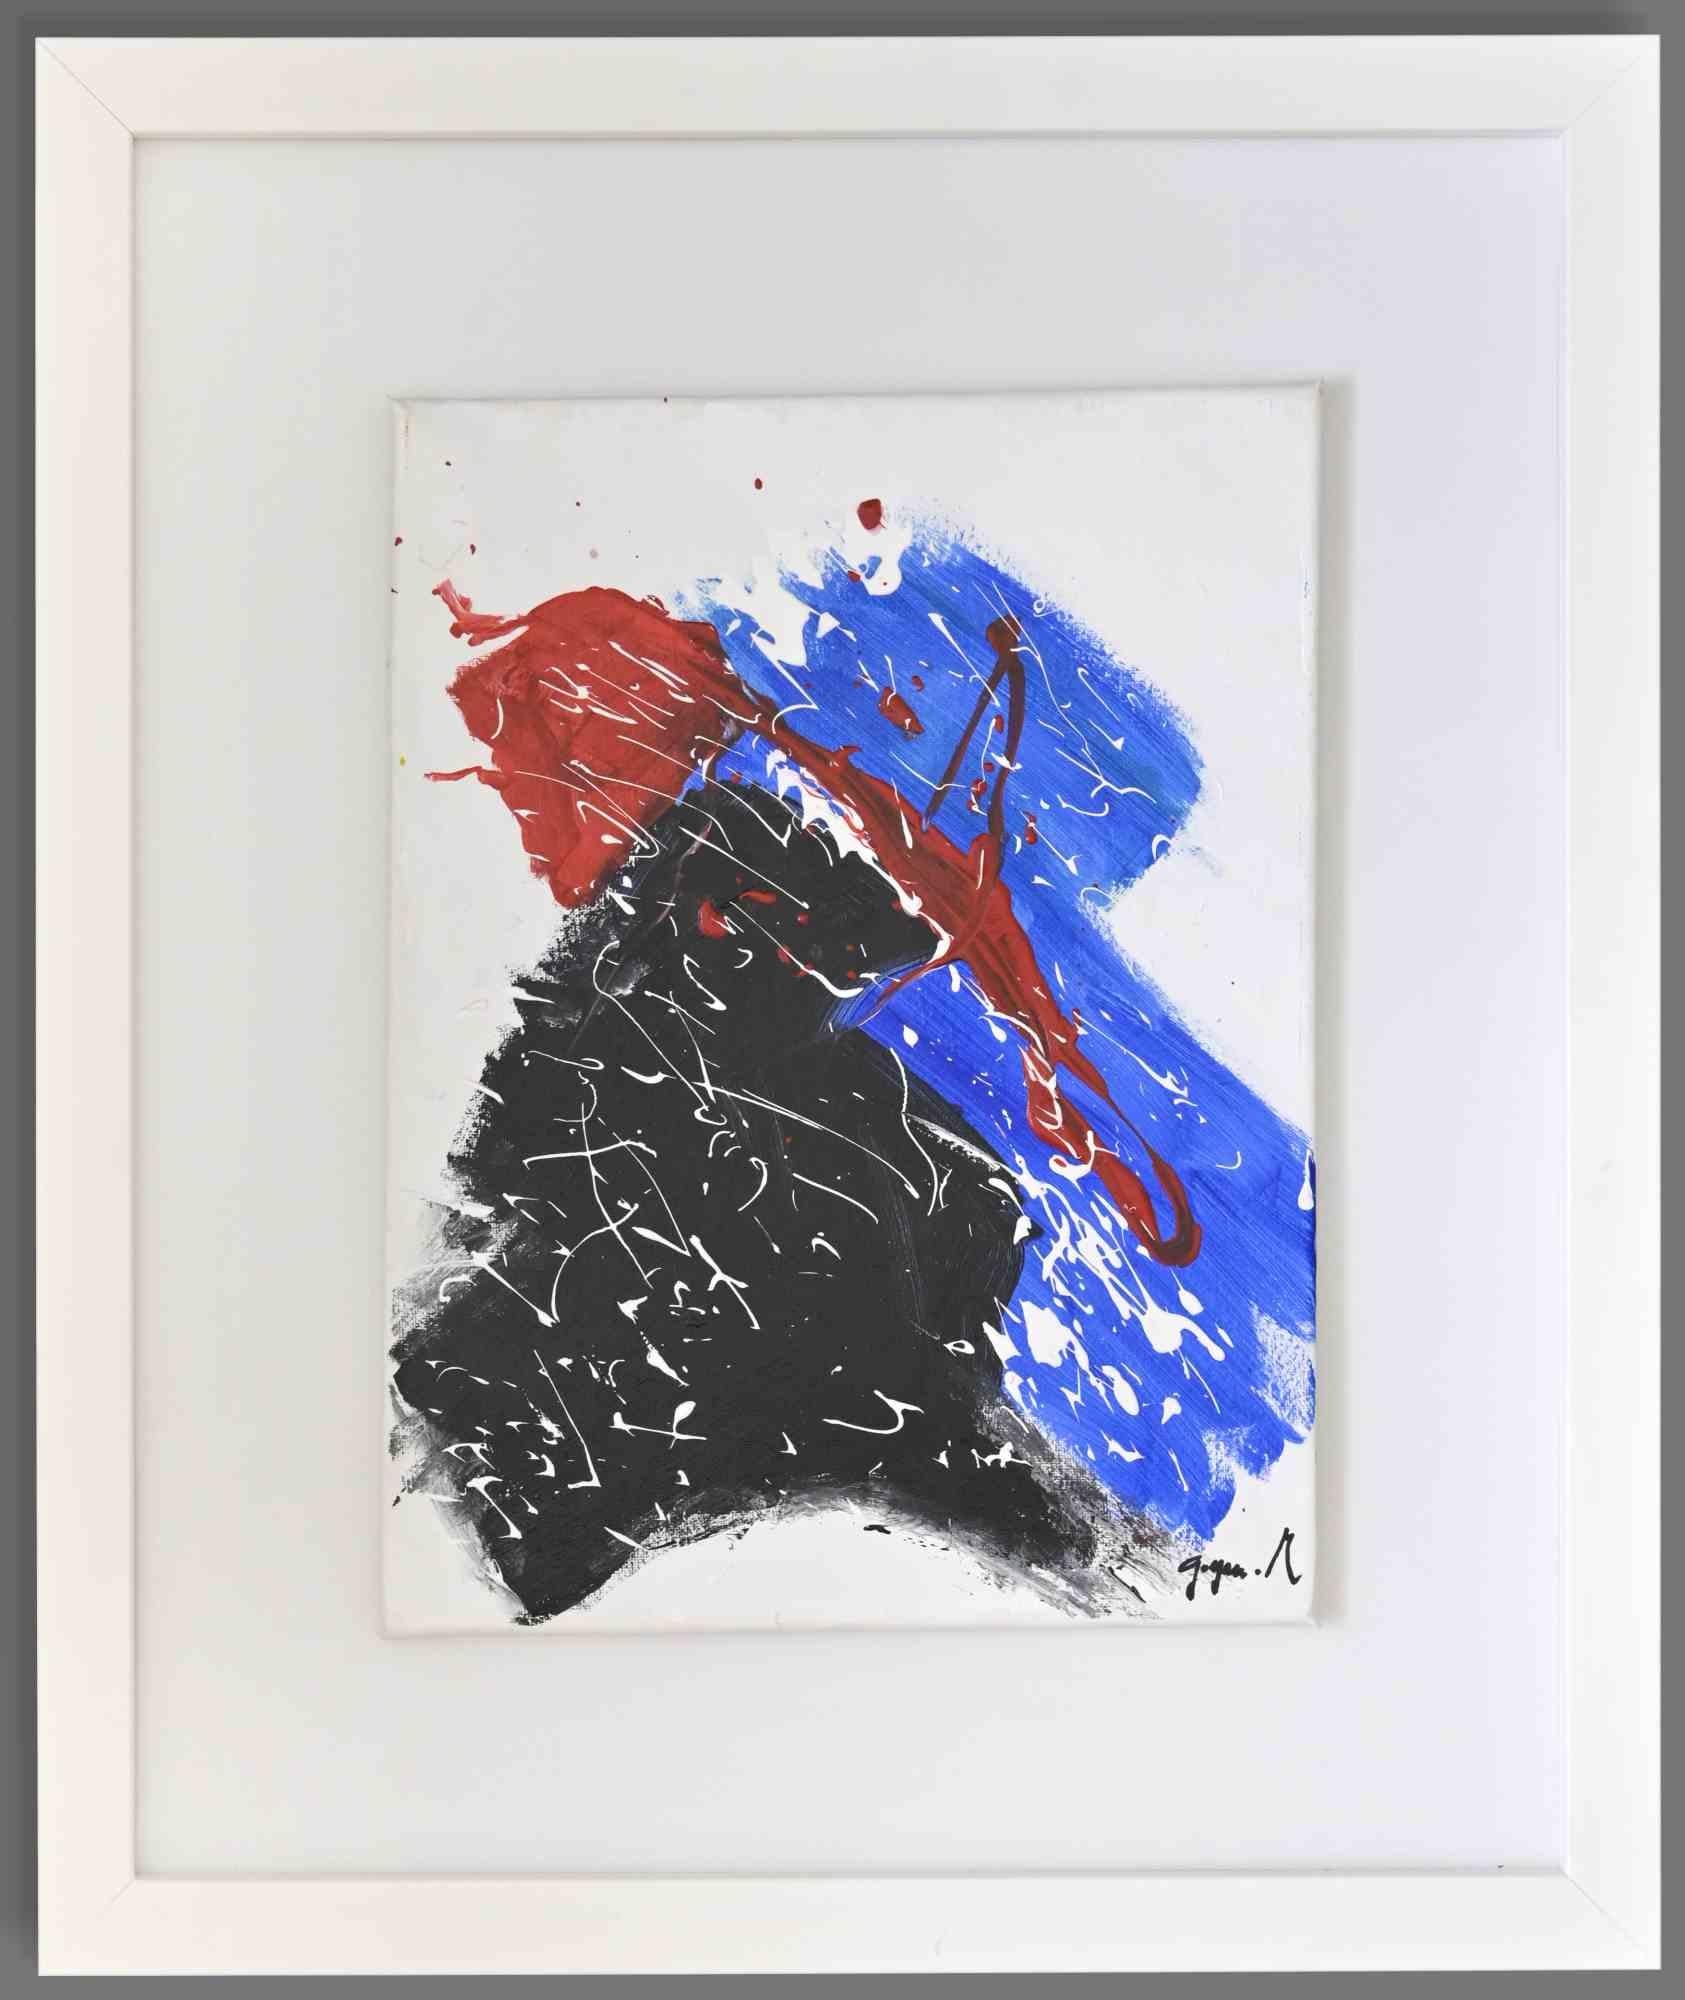 Abastraction numéro 3  est une œuvre d'art colorée réalisée par Martine Goeyens à la fin du 20e siècle.

Acrylique sur toile.

Signé à la main dans la marge inférieure droite.

Étiquette de certificat au dos. Arch. num.1283

40x40 cm.

Excellentes